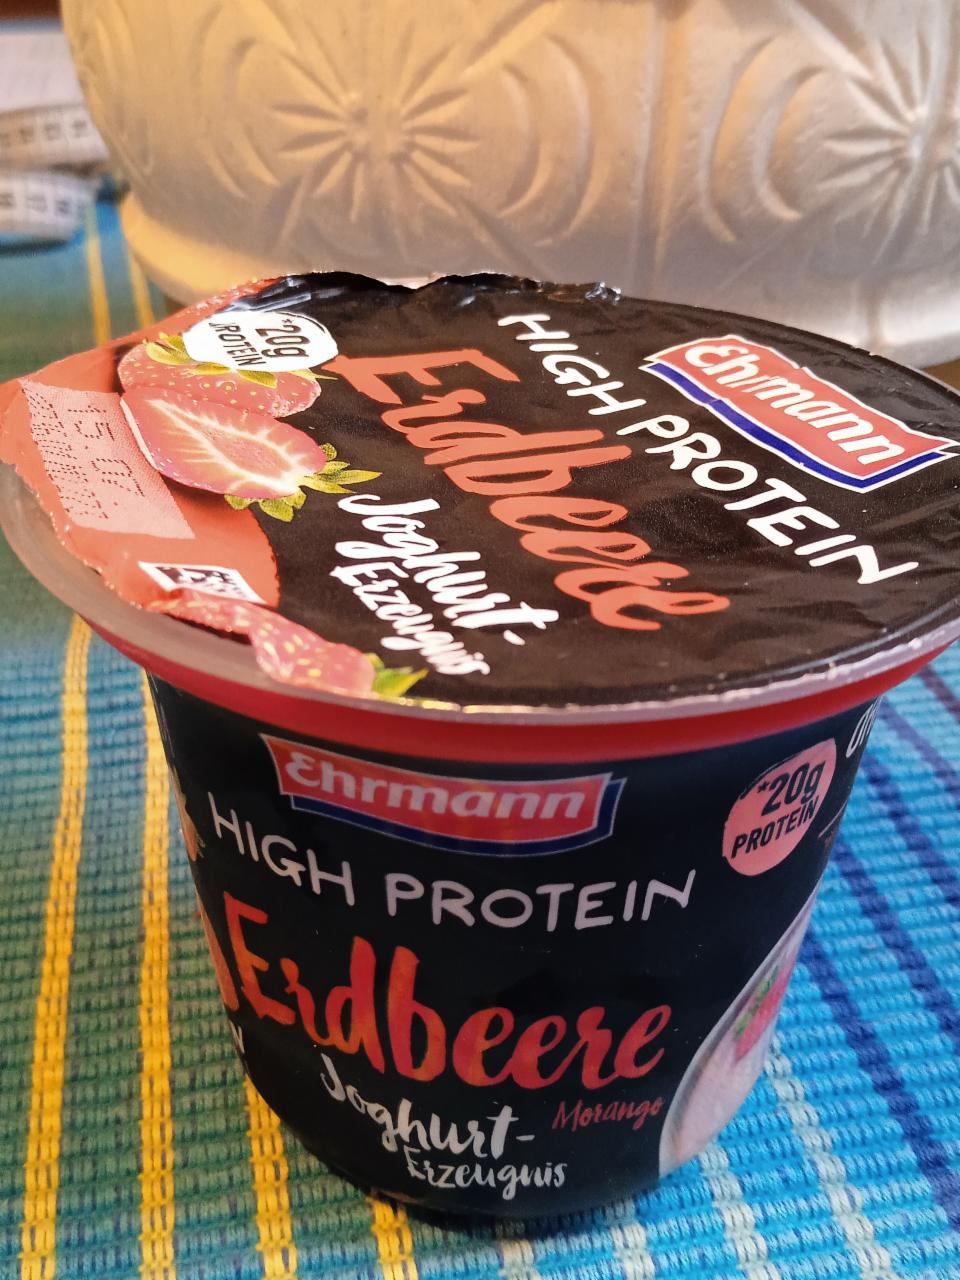 Фото - High Protein Erdbeere Joghurt Erzeugnis йогуртовый продукт с клубникой Ehrmann